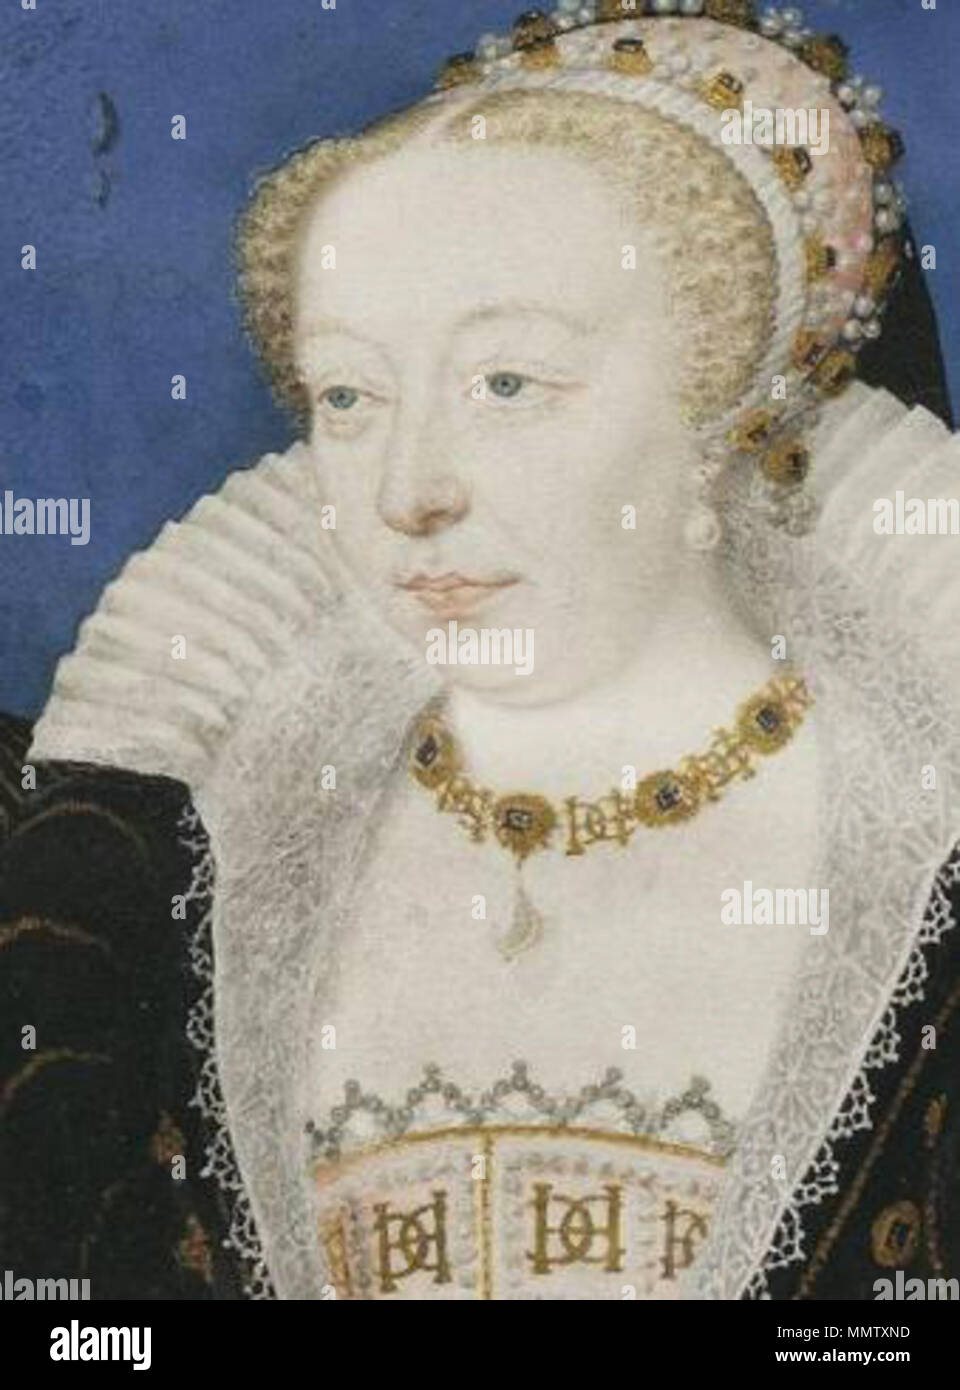 English : Extrait d'une miniature représentant Catherine de Médicis portant  sur le collier et la robe le monogramme de son époux, le roi Henri II. .  Vers 1575. Catherine de M.